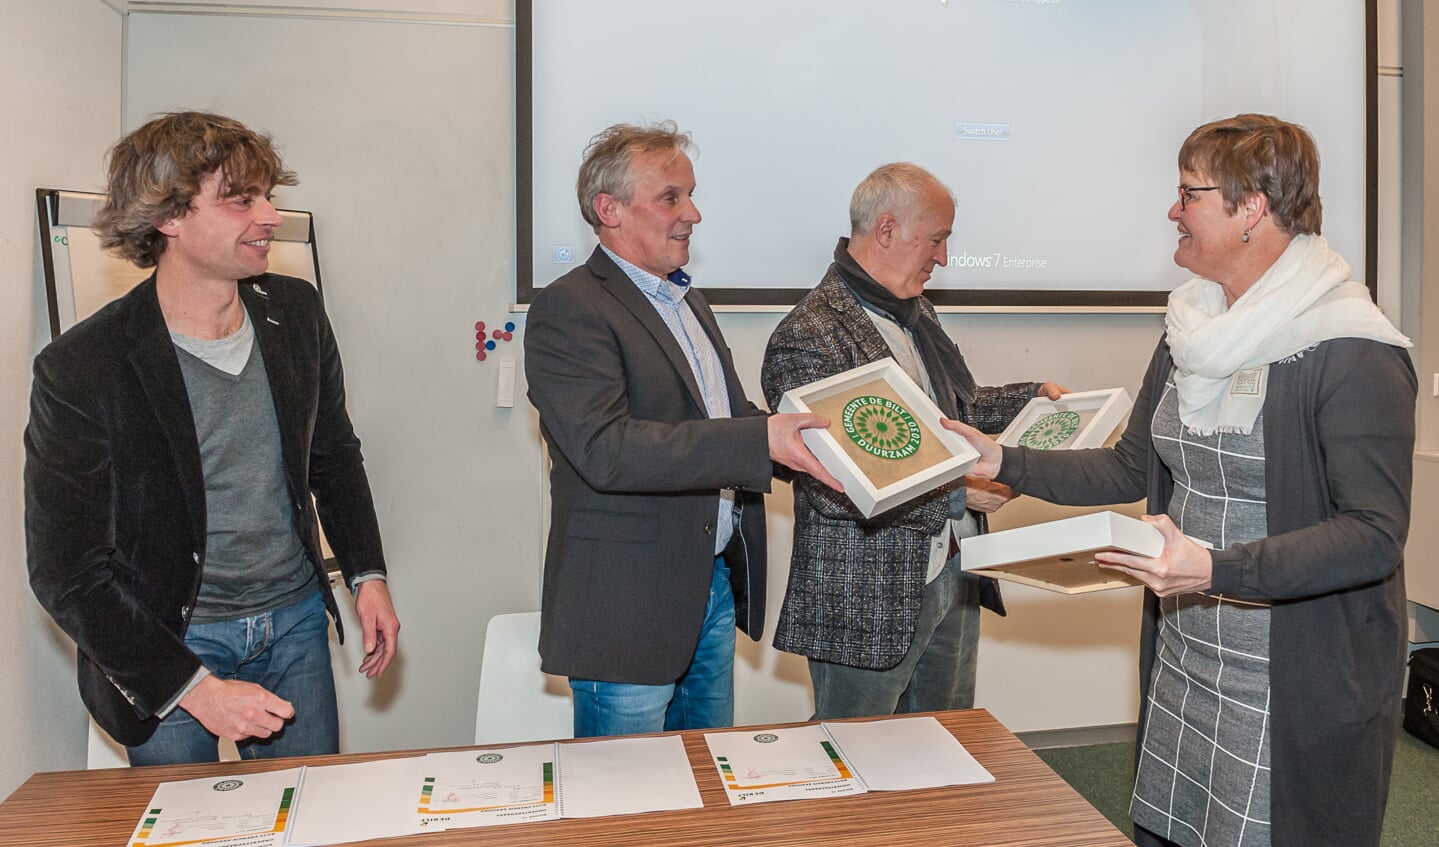 Biltse architecten sluitten zich aan bij het Bilts Energie Beraad enontvangen het Duurzaamheidssymbool van de gemeente De Bilt van wethouder Anne Brommersma.